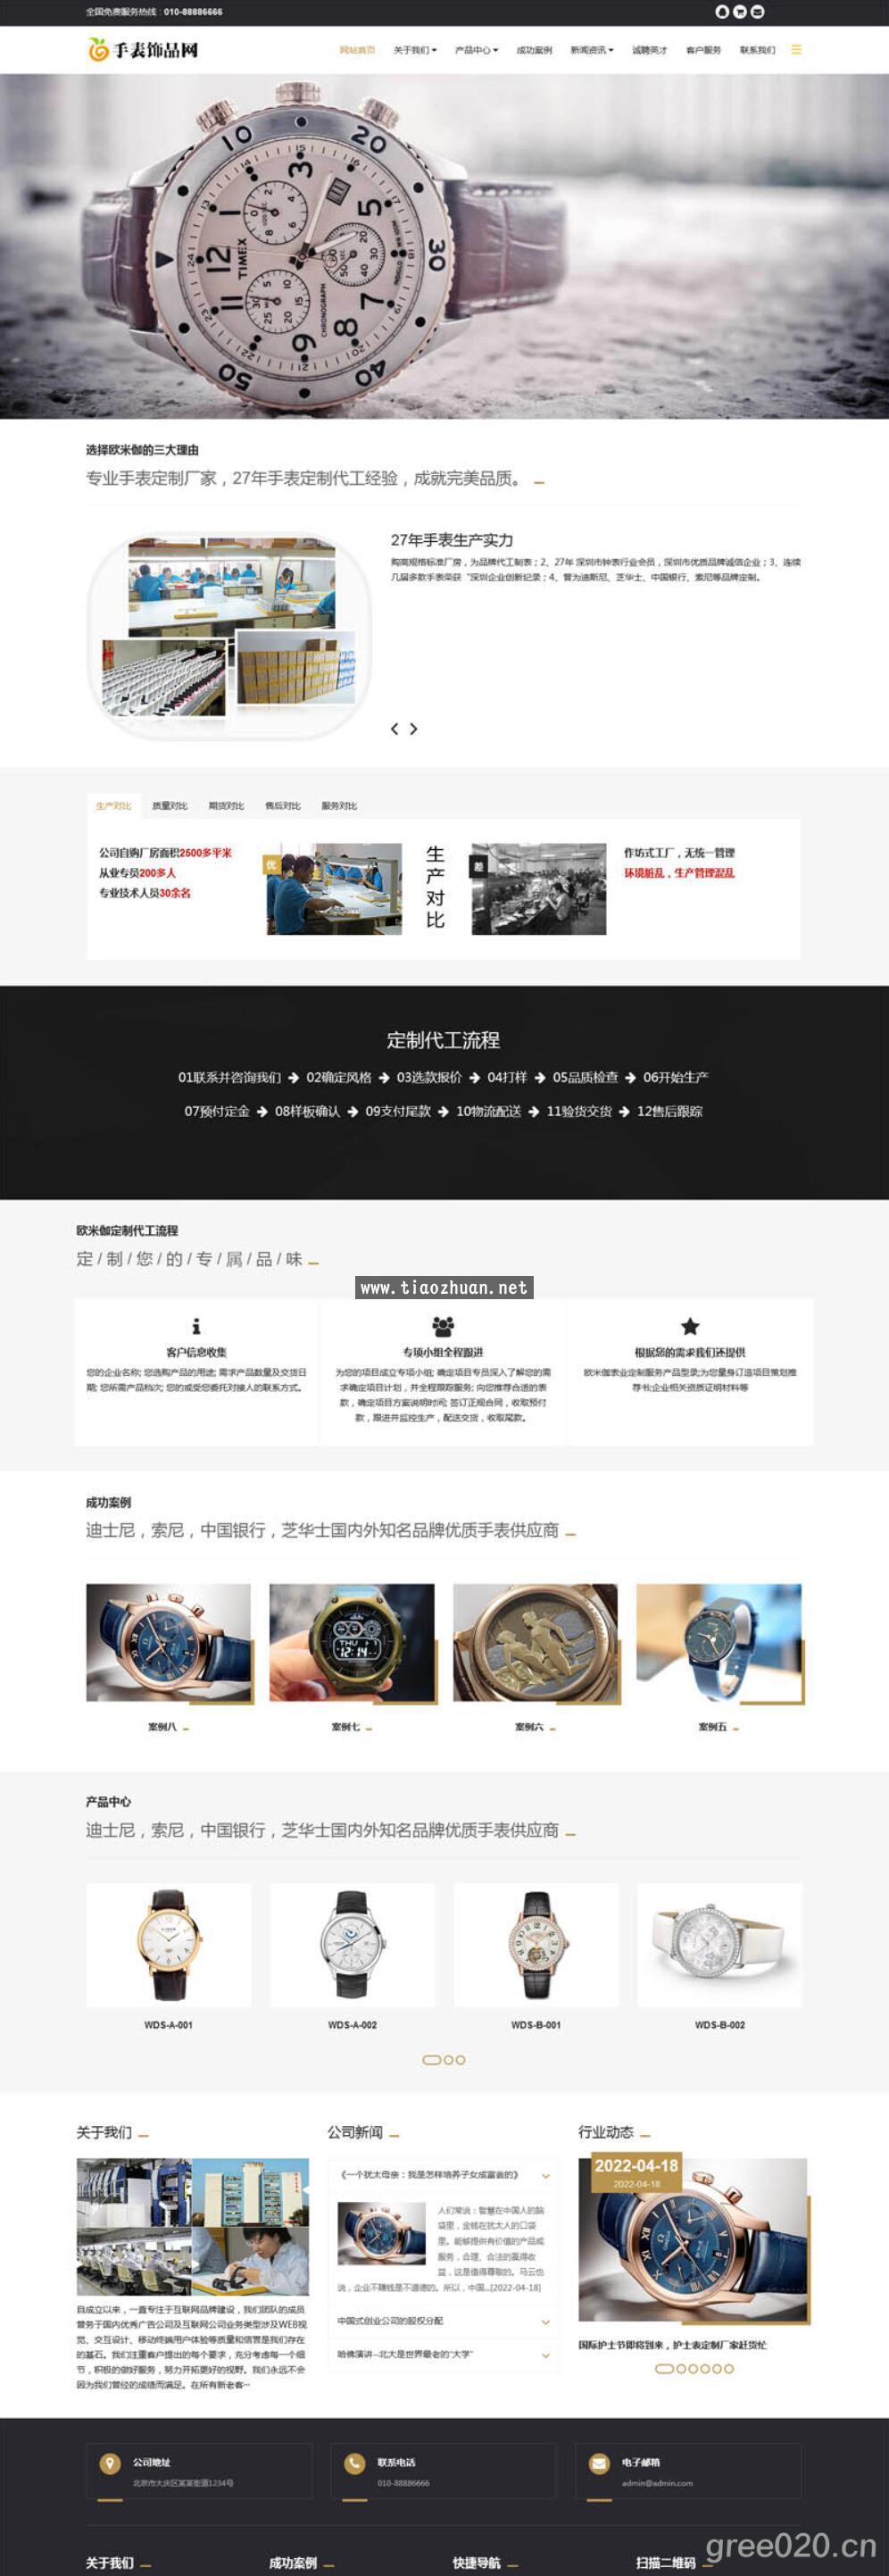 品牌钟表手表网站模板 时尚手链饰品销售网站源码下载